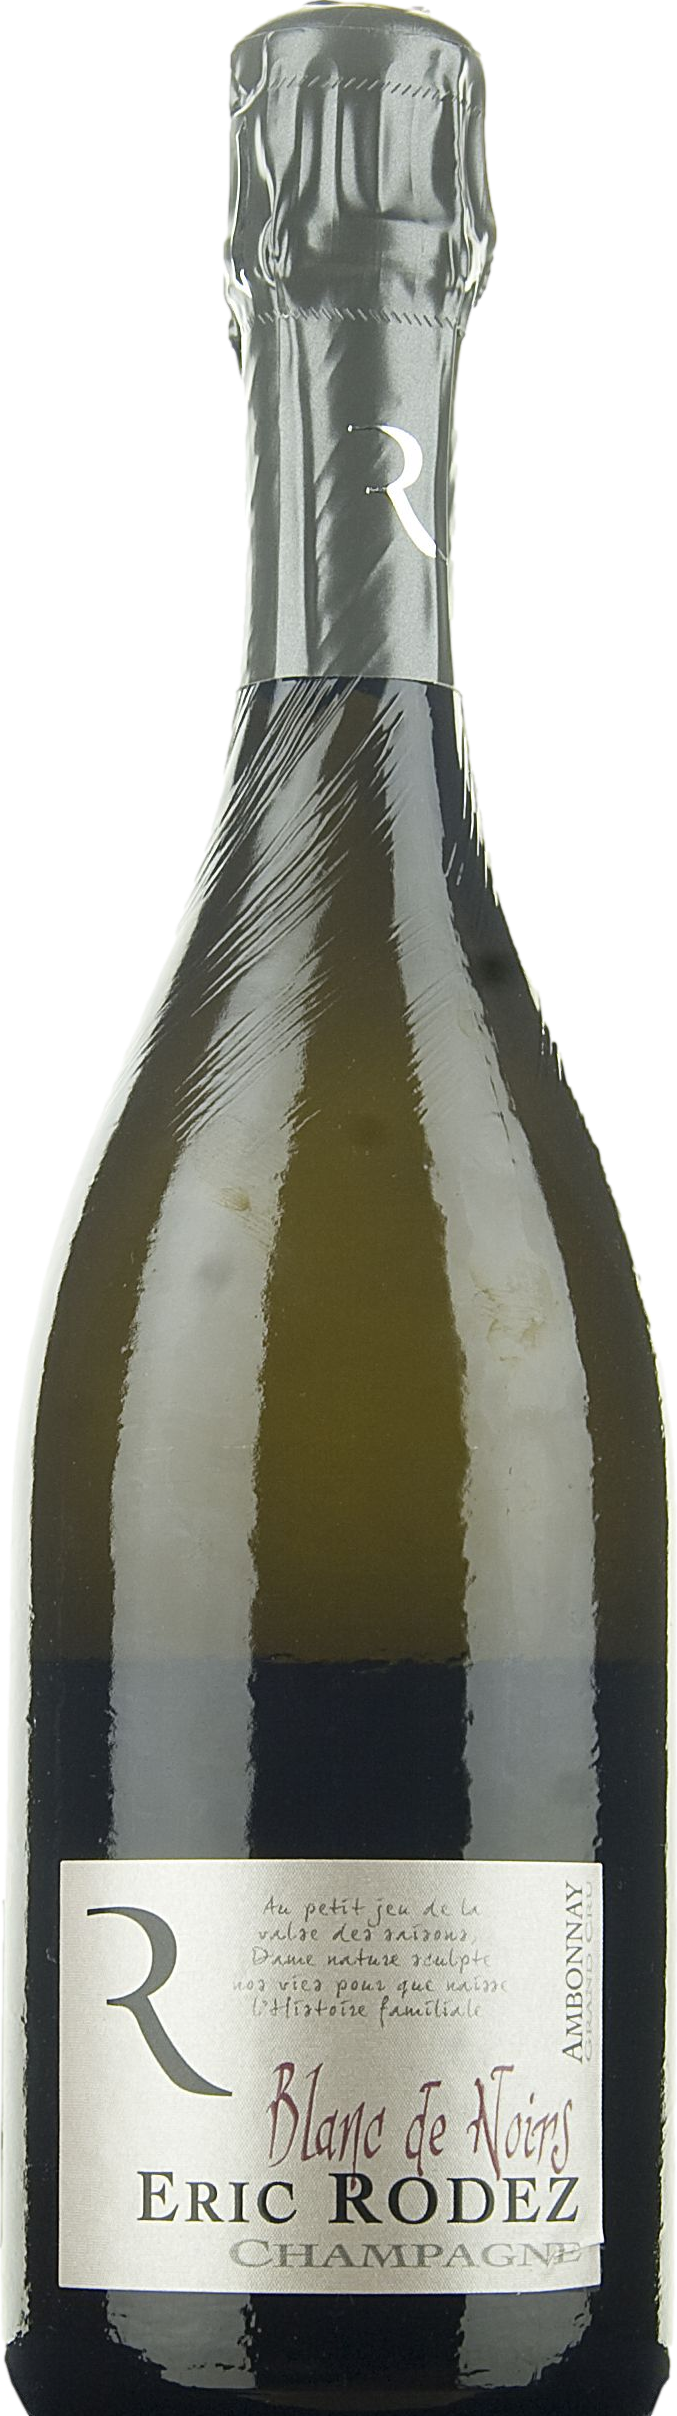 Champagne Eric Rodez Blanc de Noirs Grand Cru